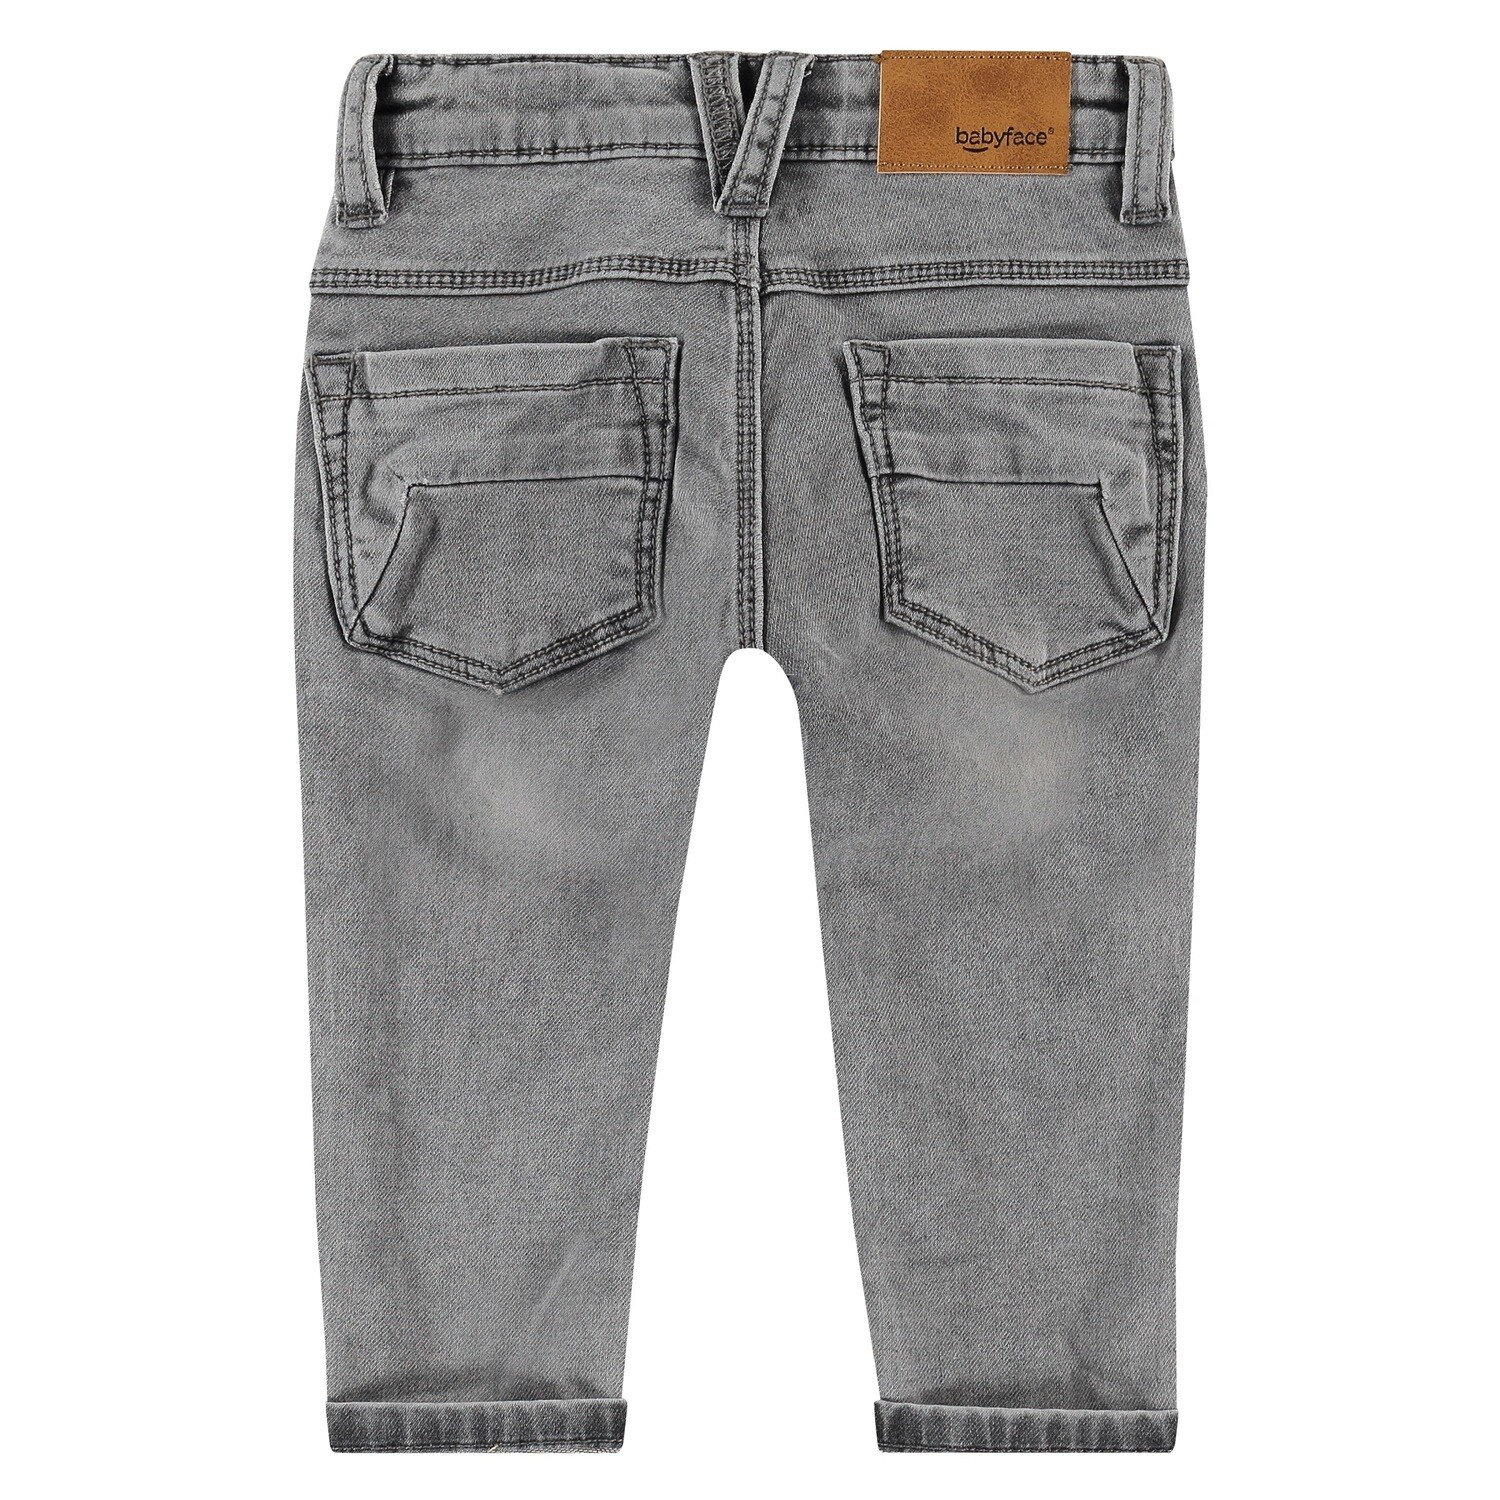 Babyface Boys Medium Grey Denim Jogg Jeans 7275